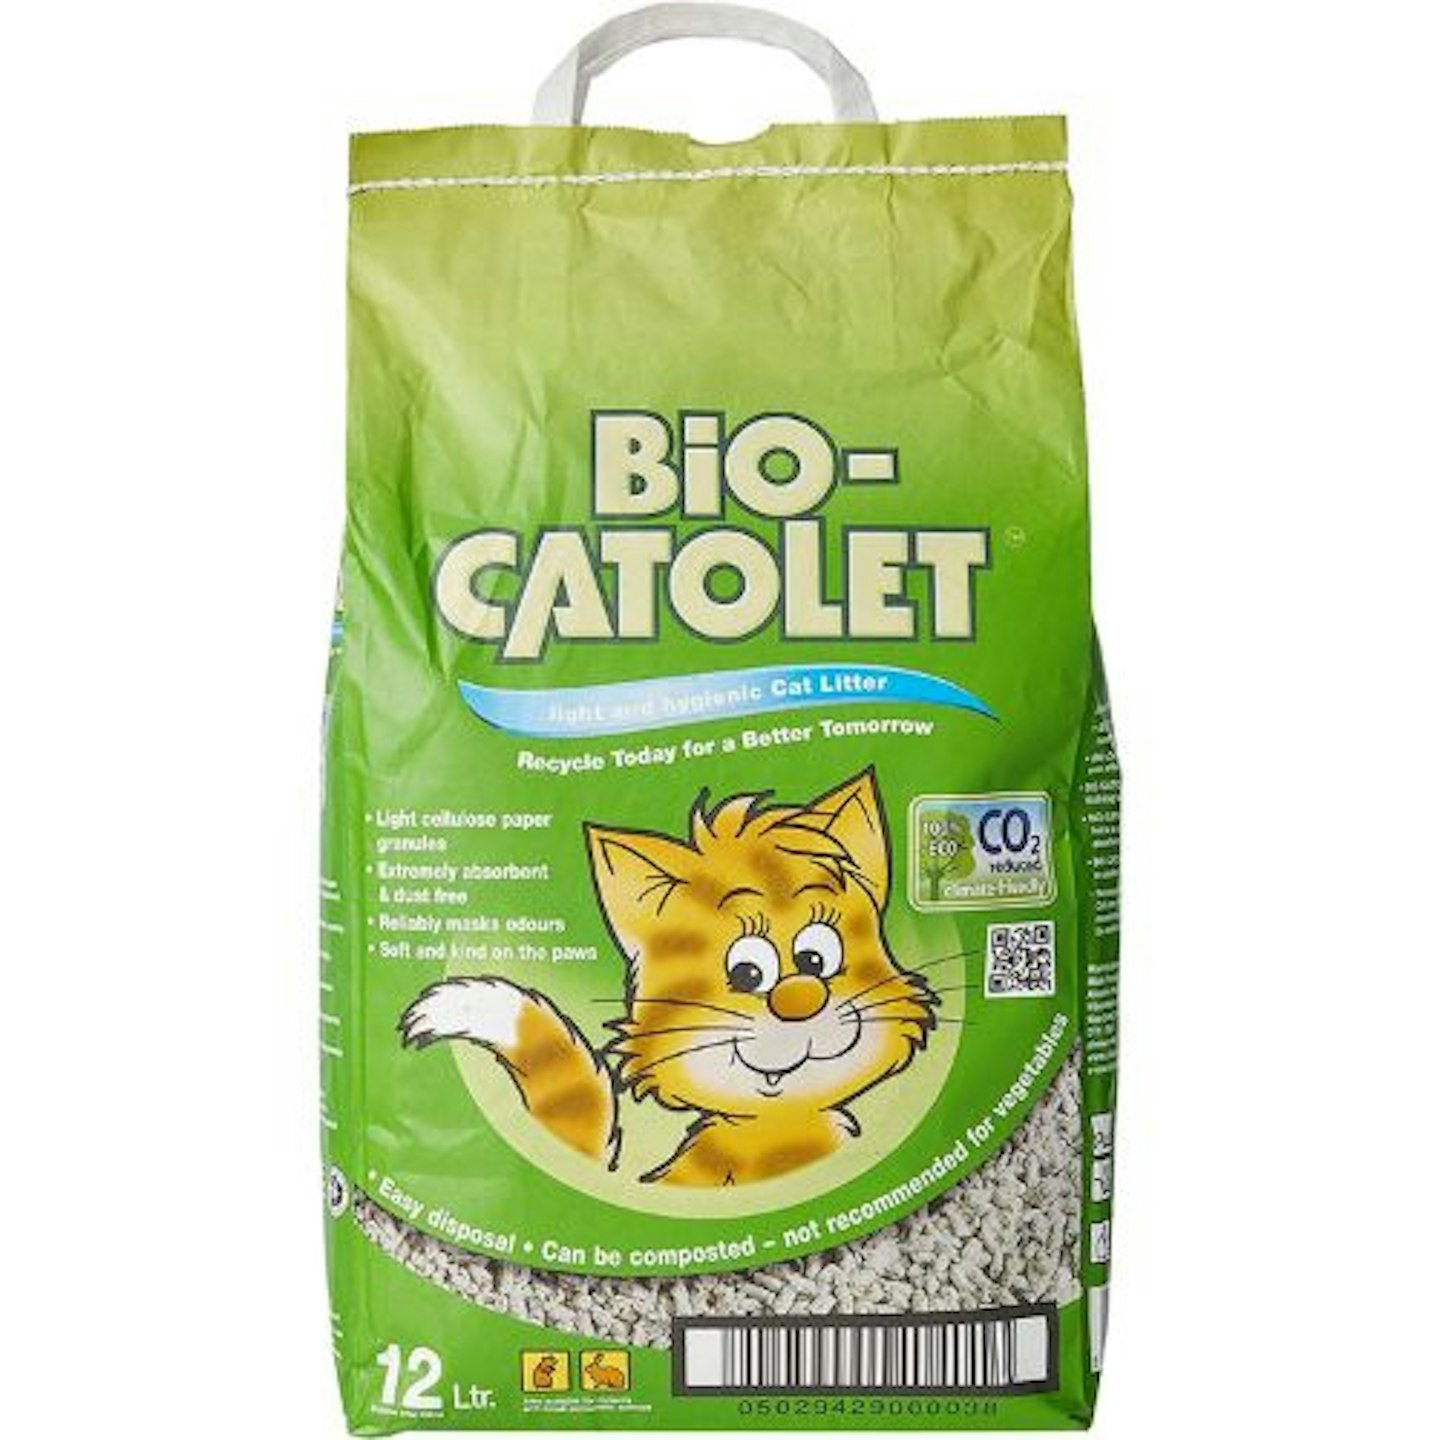 Bio-Catolet Light & Hygienic Cat Litter